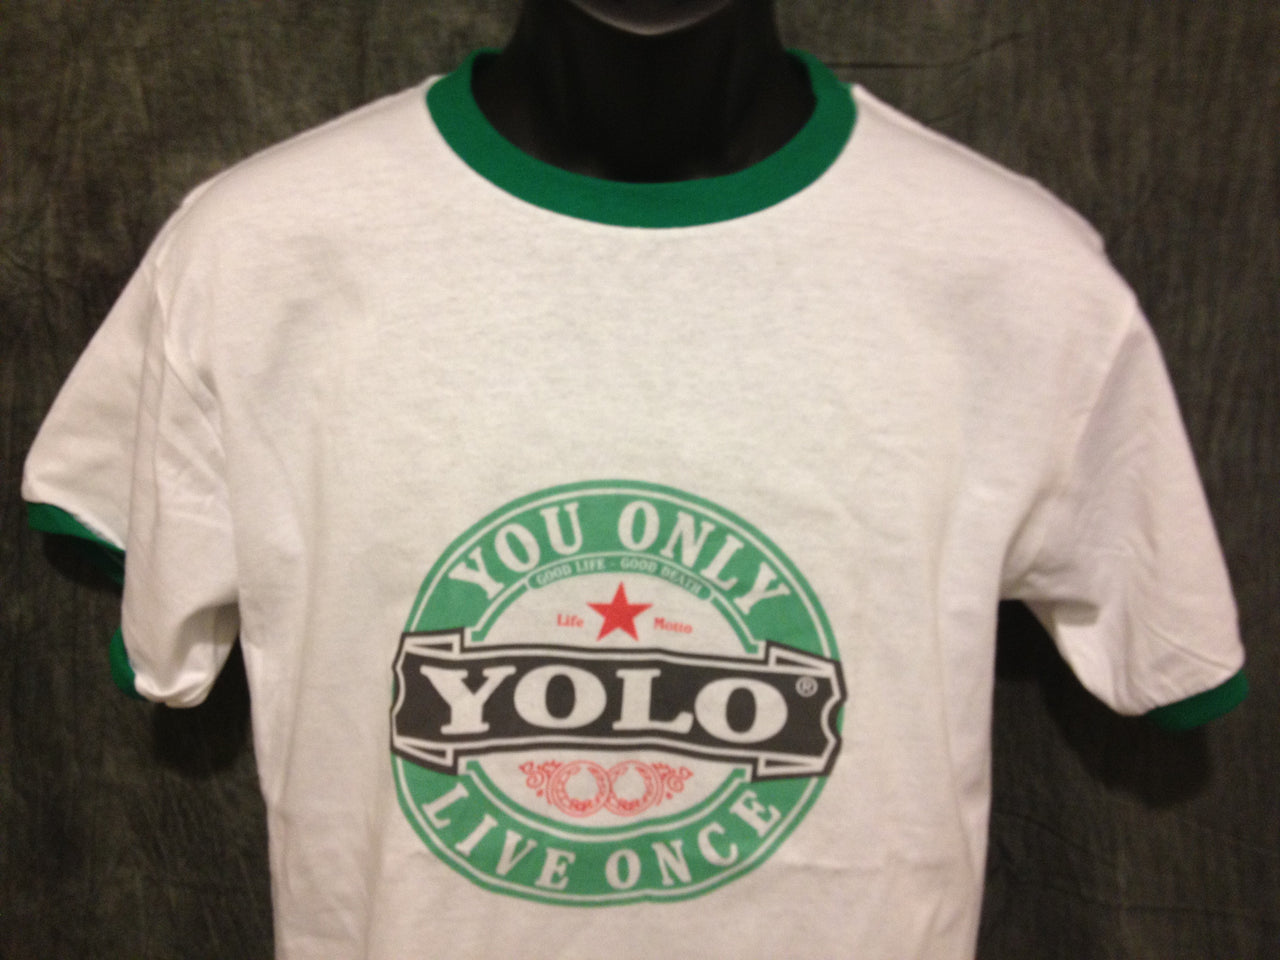 Drake Yolo Ringer Tshirt: Yolo Print on Green Ringer Tshirt - TshirtNow.net - 1